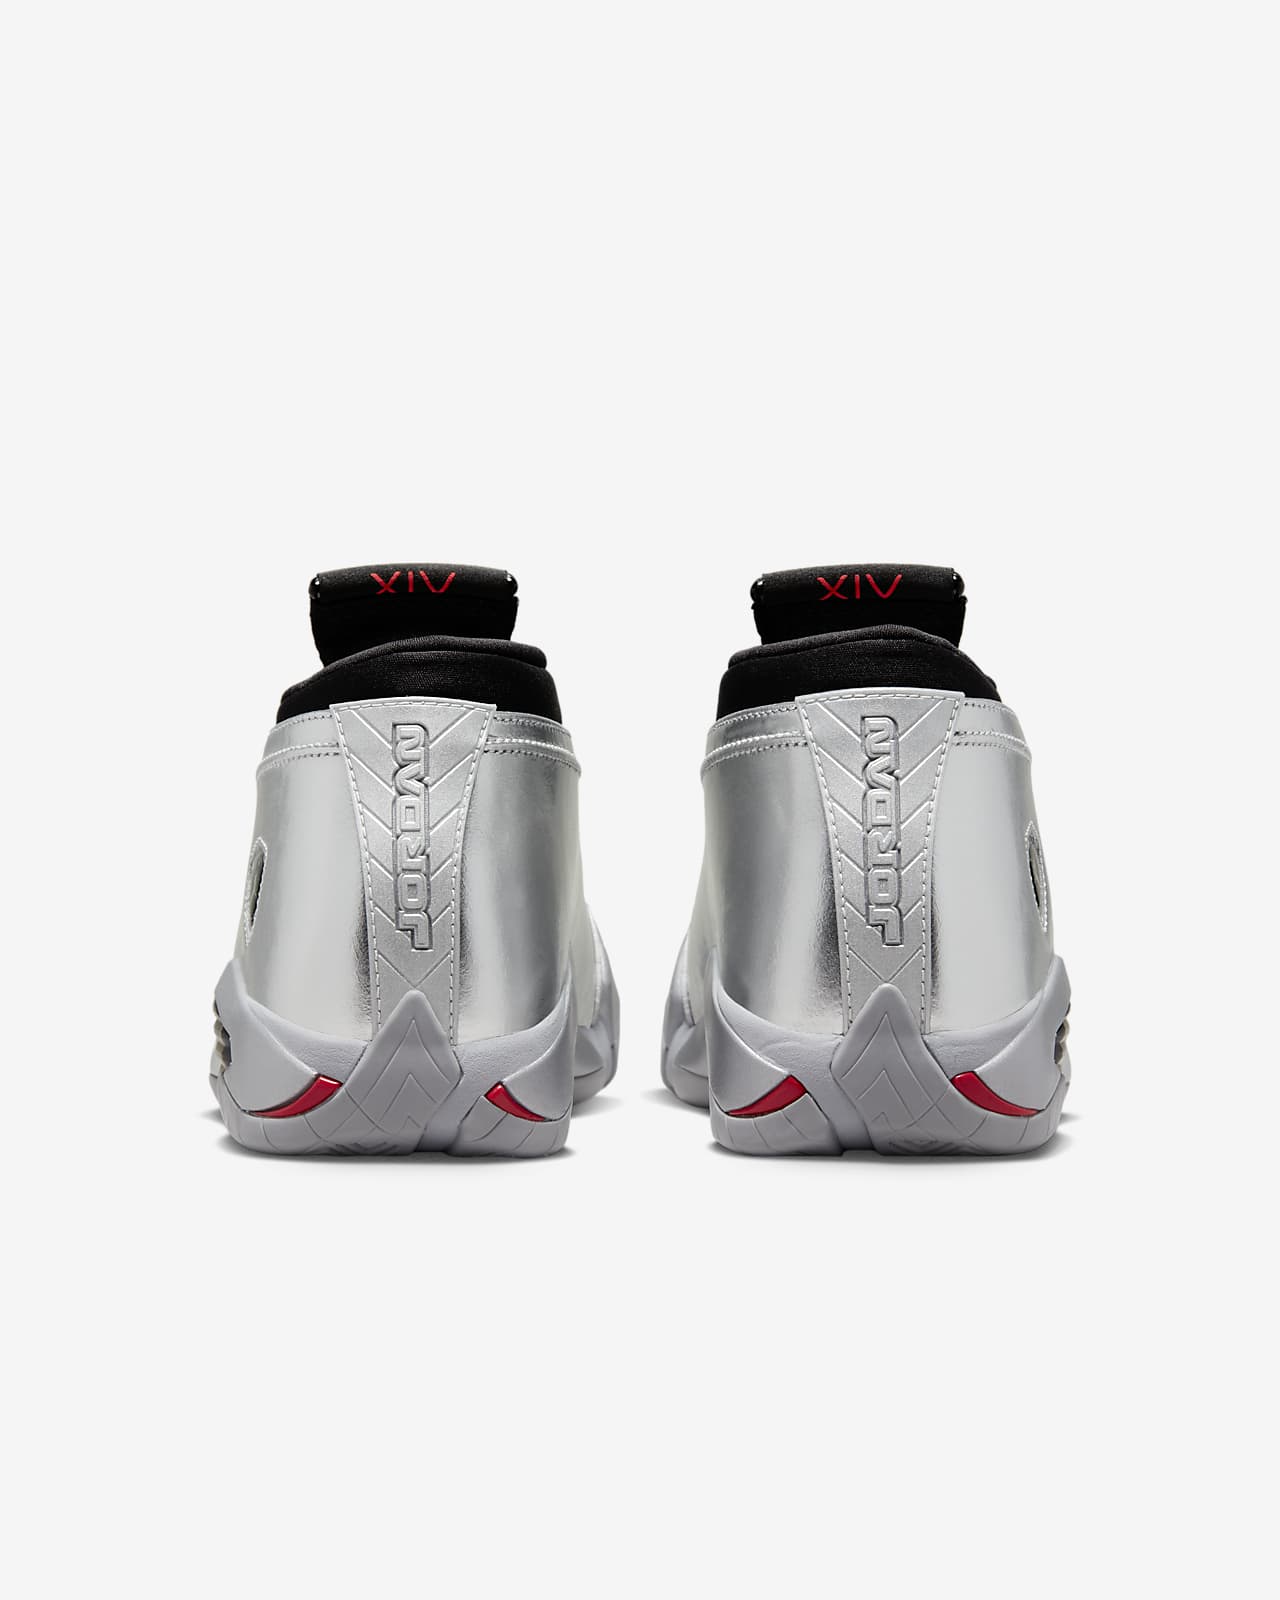 kolonie zoet Bestuurbaar Air Jordan 14 Retro Low Women's Shoes. Nike LU